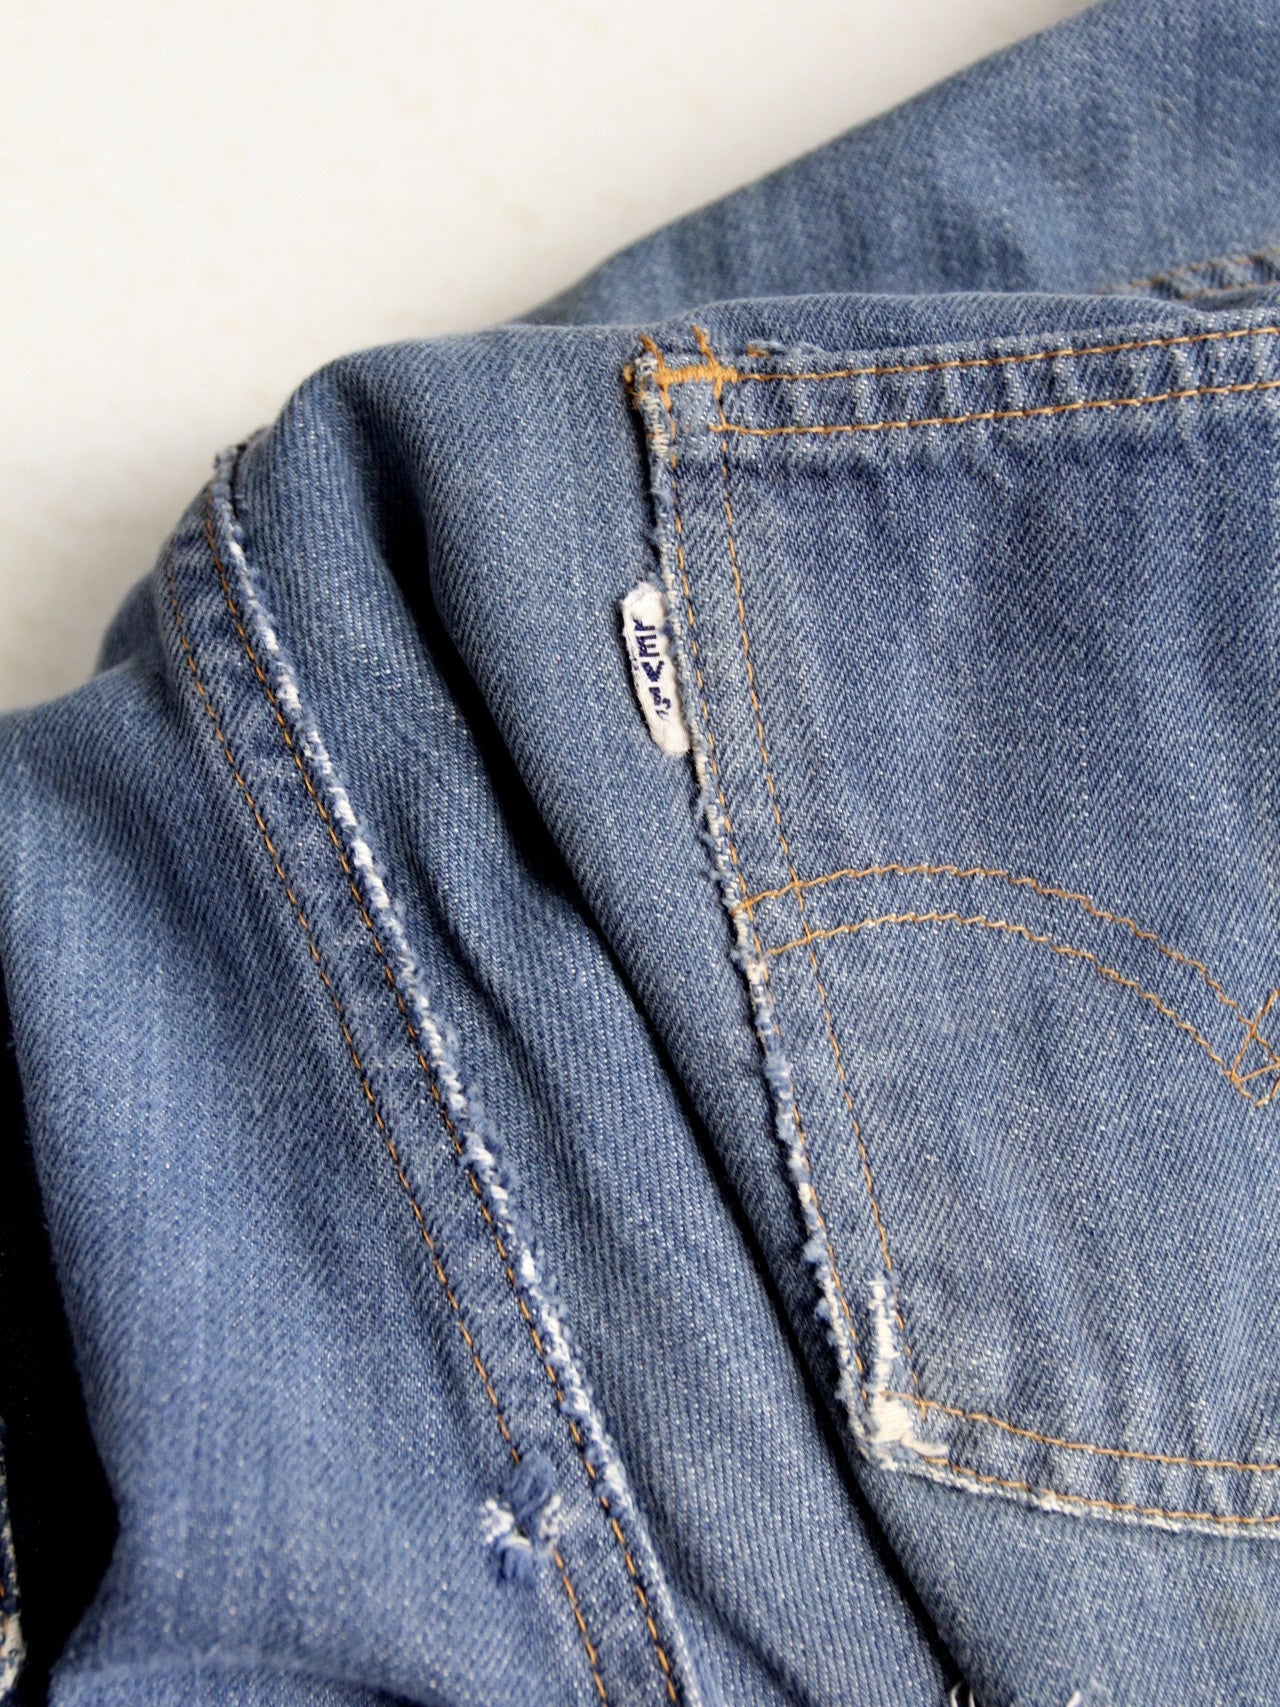 vintage Levi's for Gals denim jeans, 29 x 30 – 86 Vintage